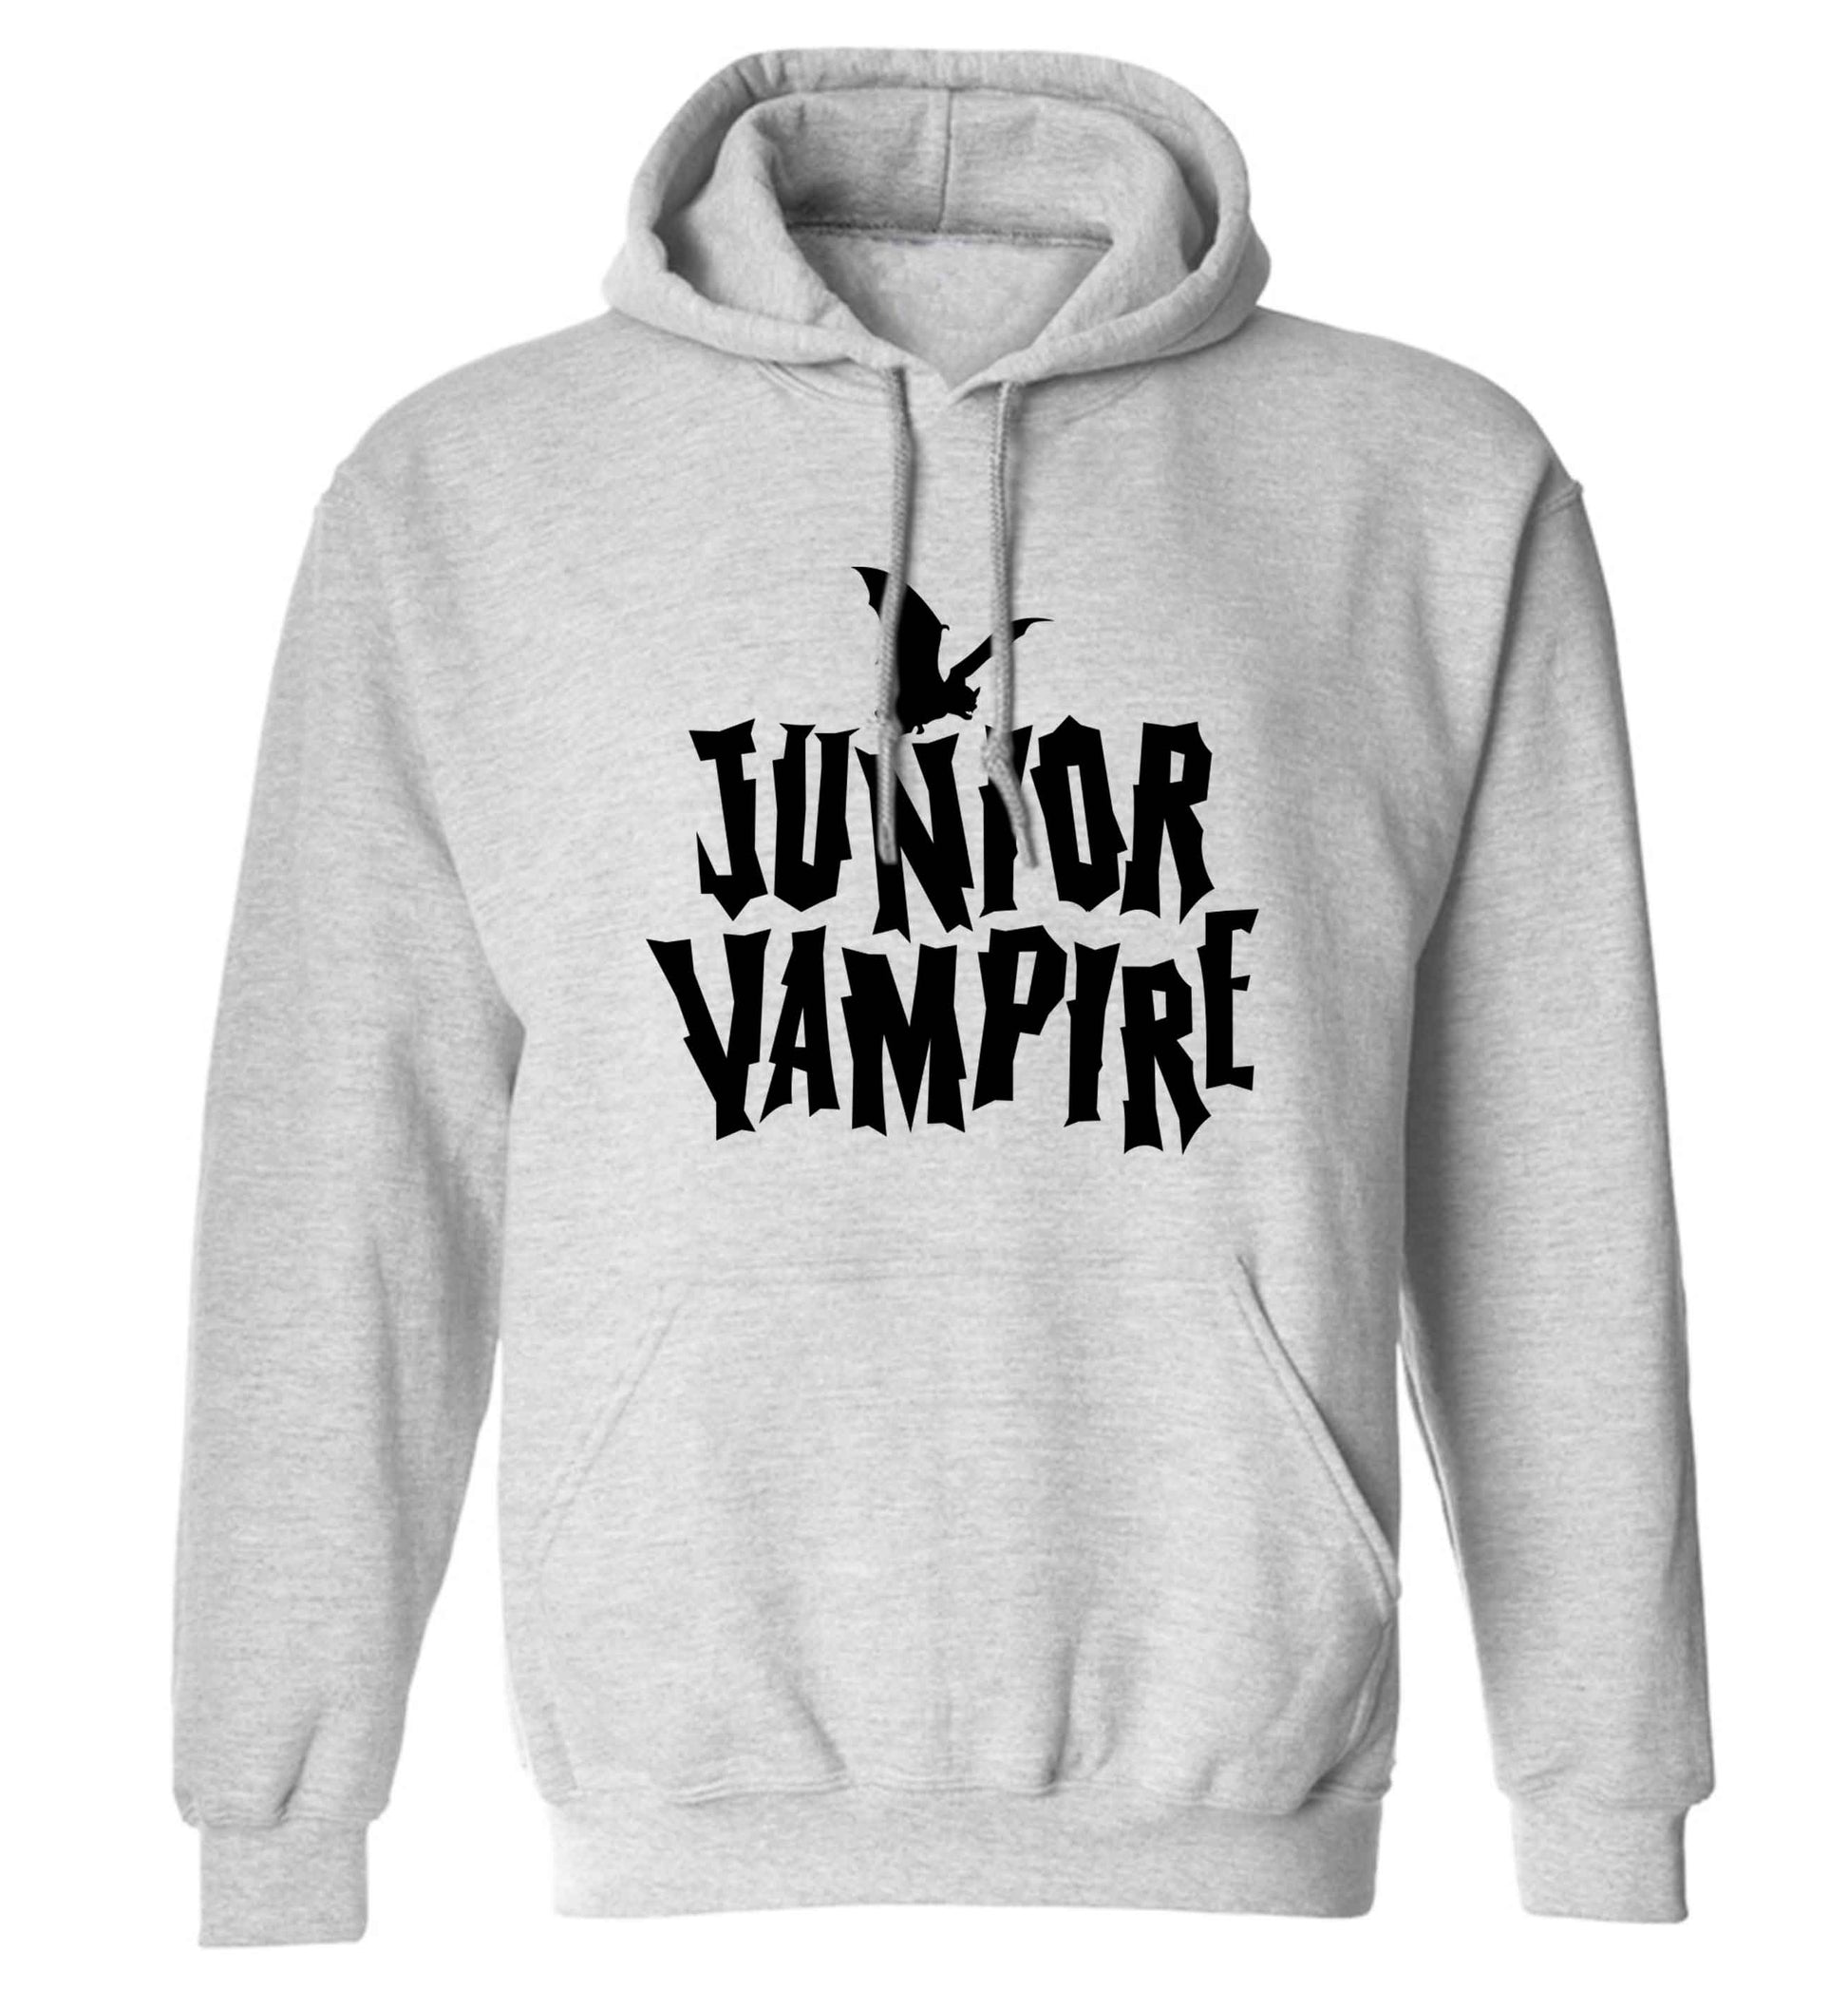 Junior vampire adults unisex grey hoodie 2XL